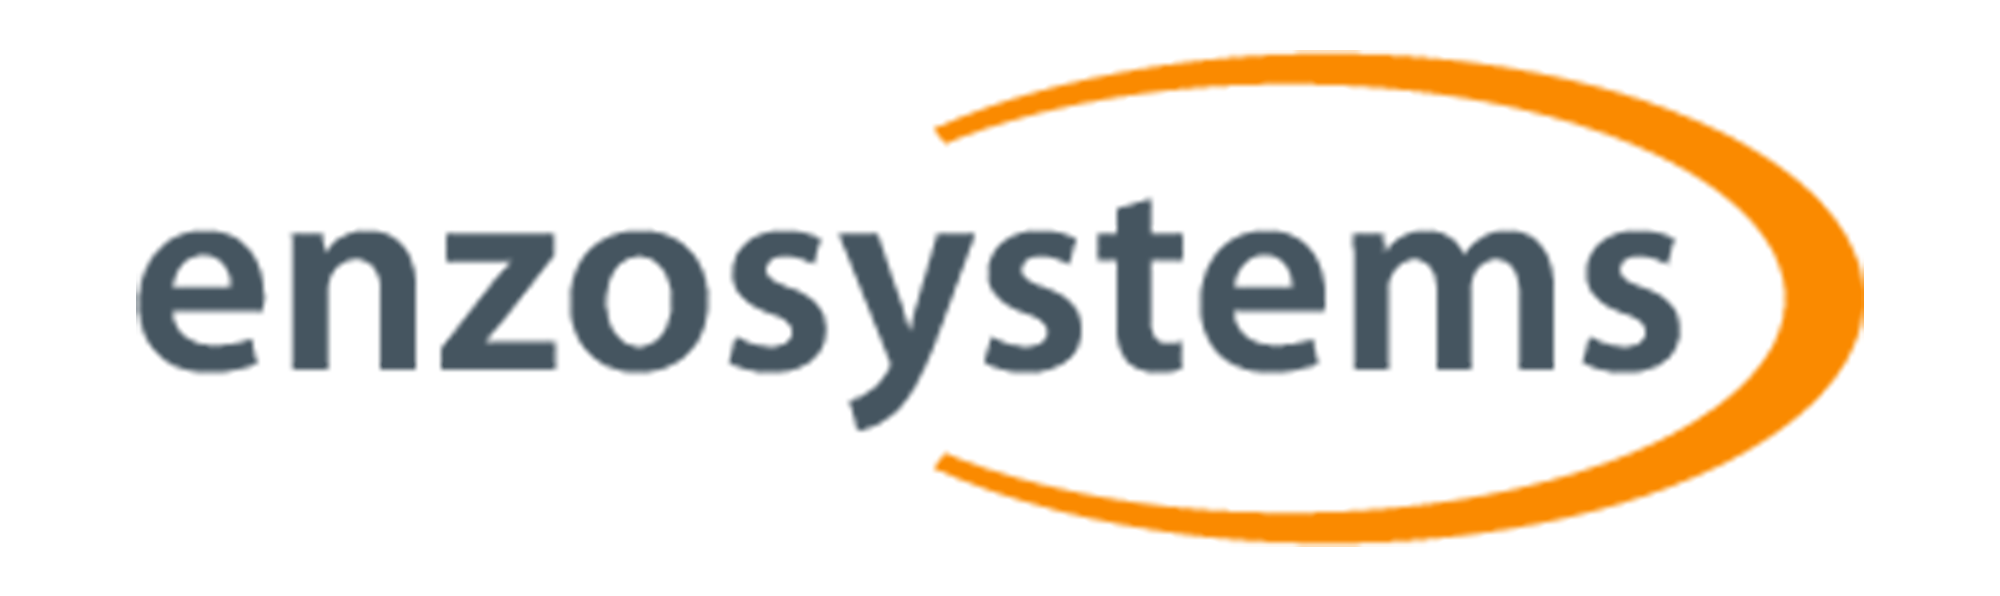 Enzosystems_logo_2000x596